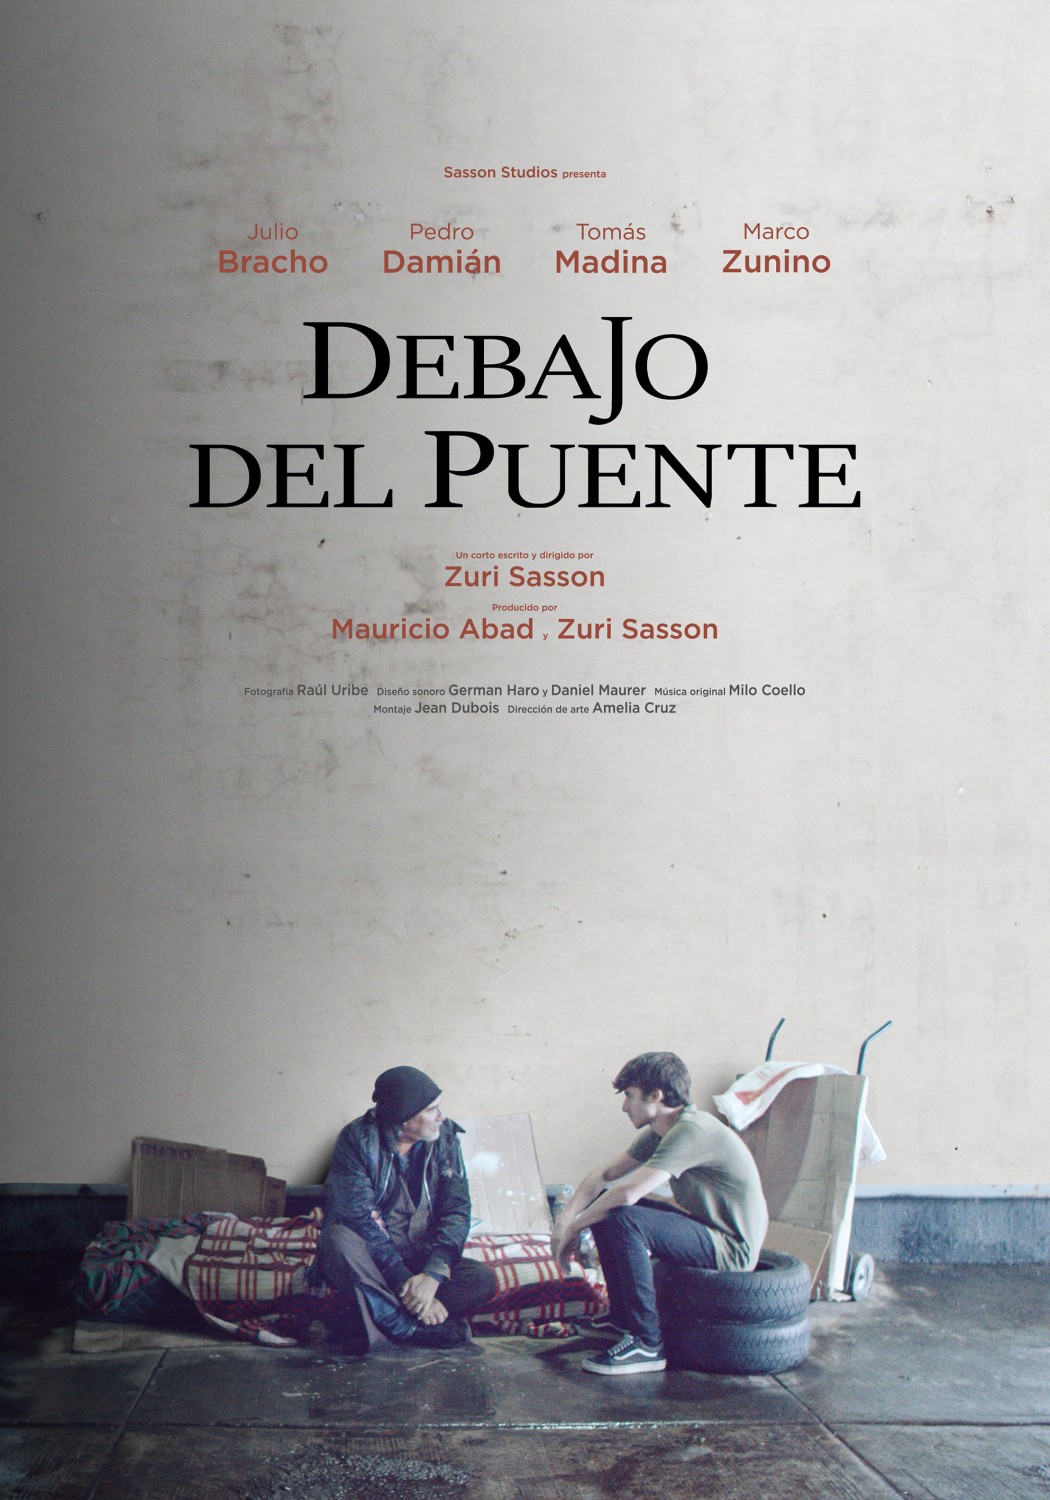 Extra Large Movie Poster Image for Debajo del Puente